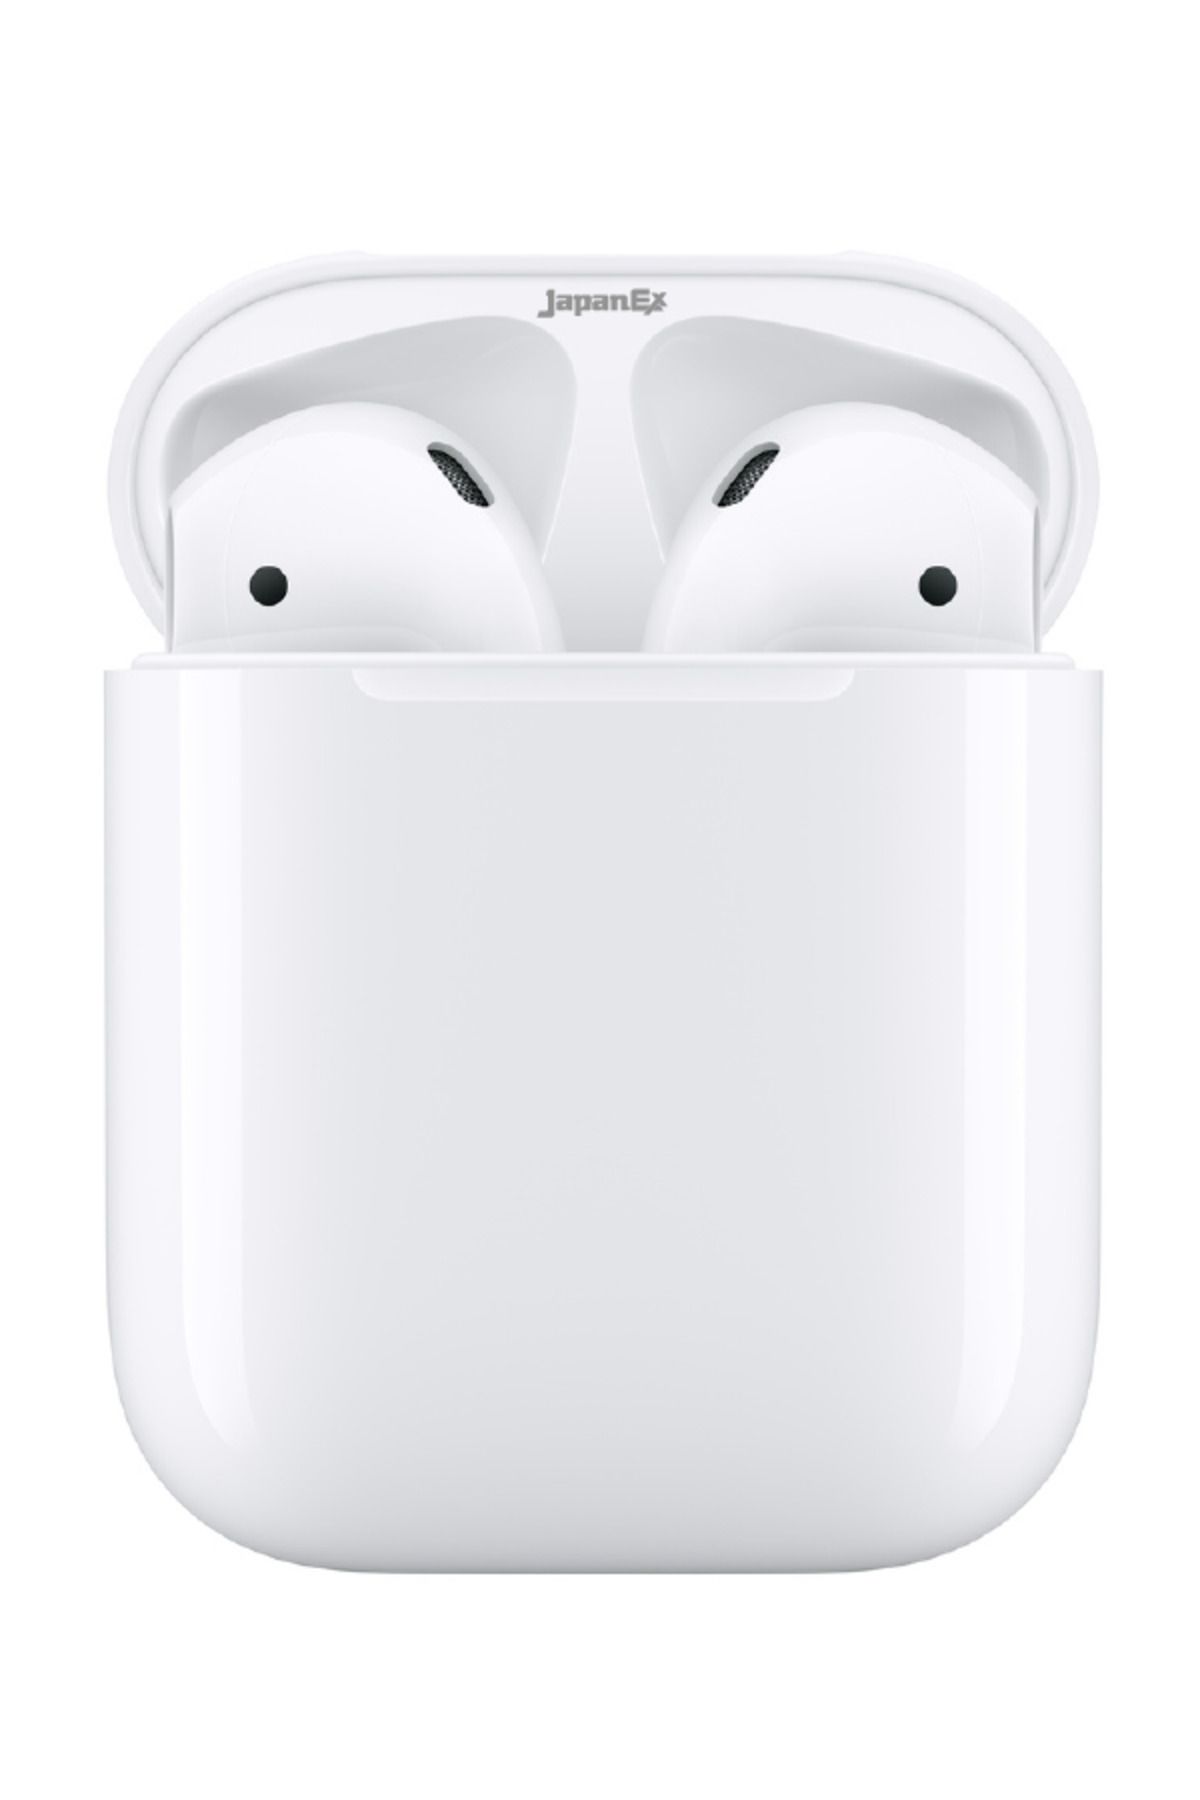 Japanex Beyaz Bluetooth Kulaklık Ios-xiaomi-samsung Uyumlu Distribütör Garantili